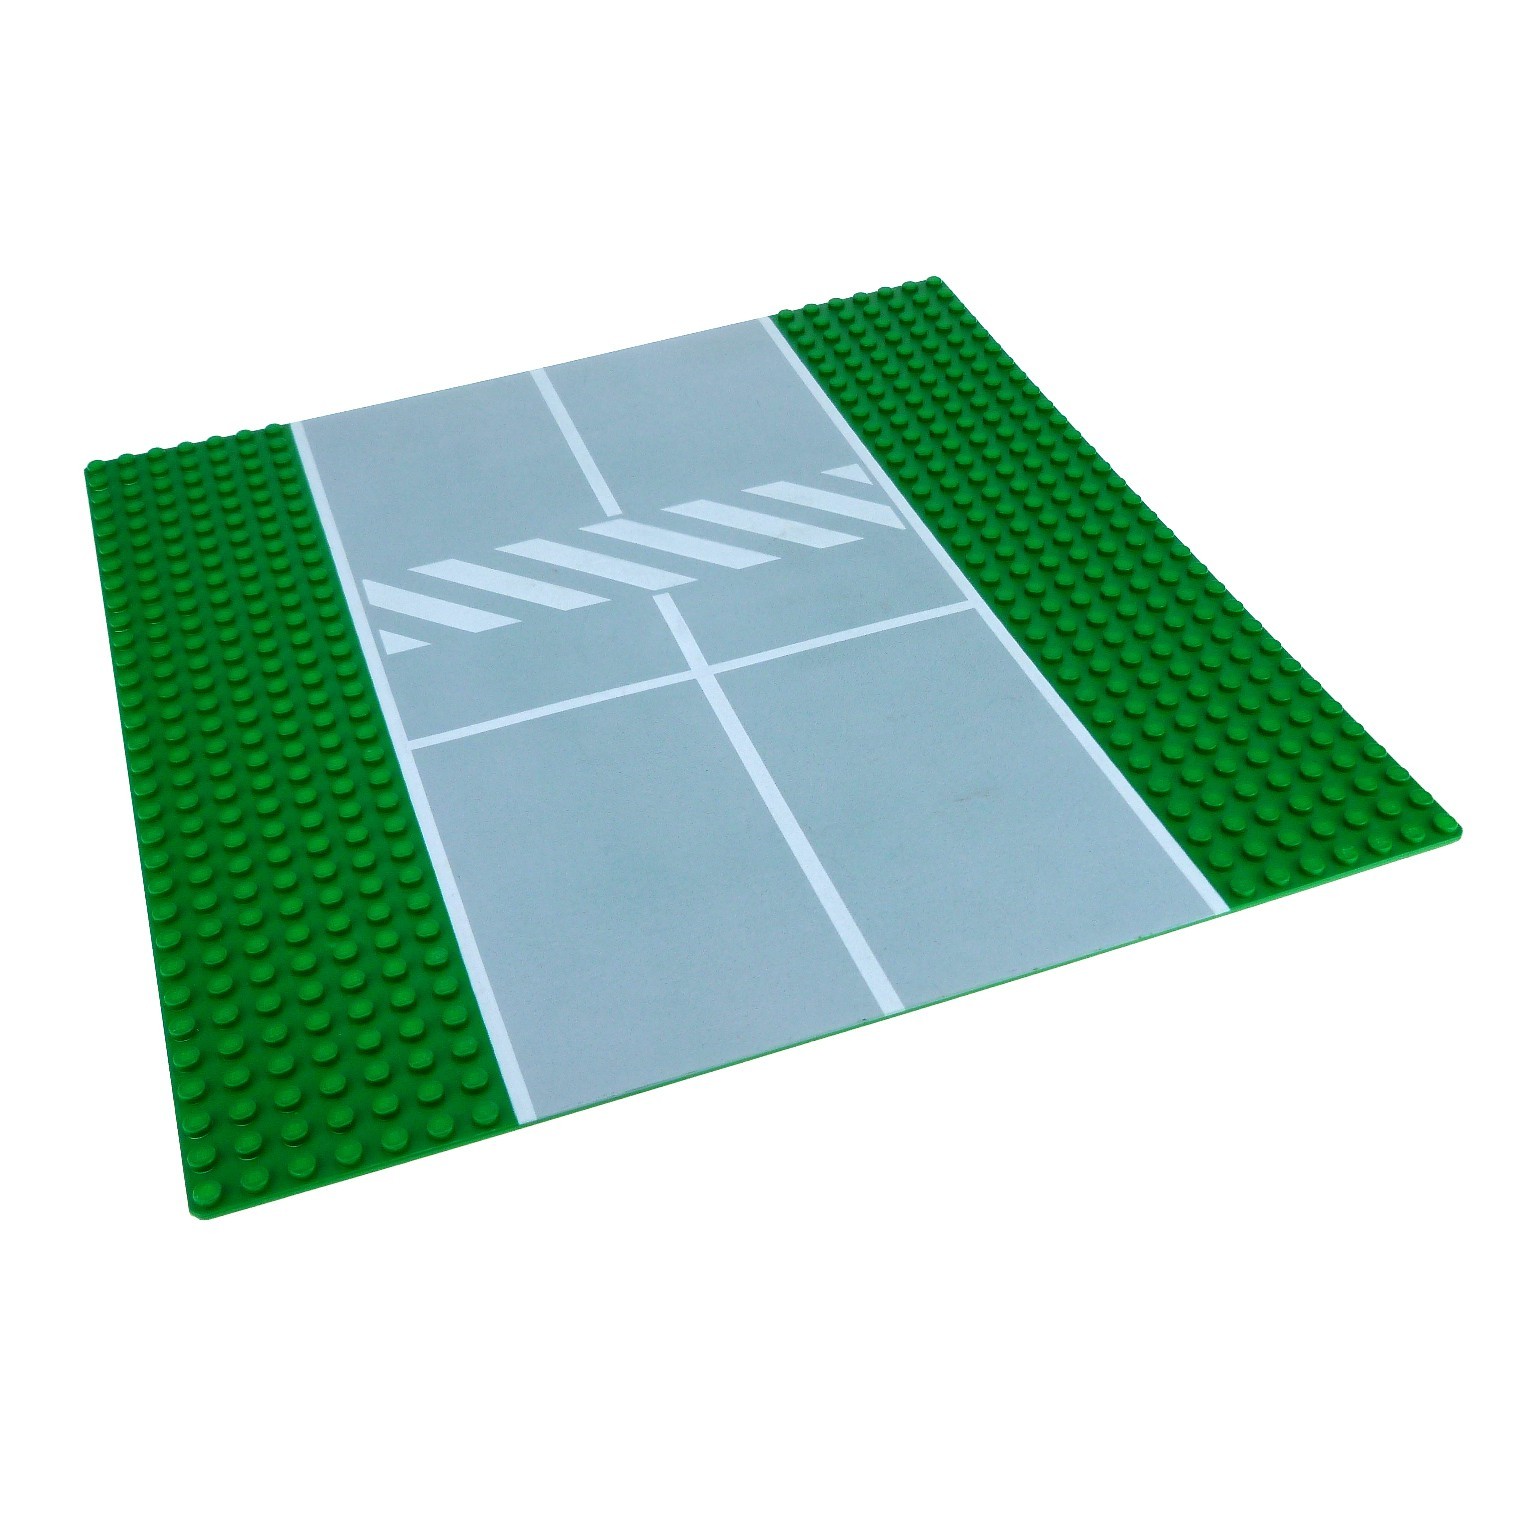 1 x Lego System Platte B-Ware beschädigt Bau Grund Basic Platte grün 32 x 32 Nop 